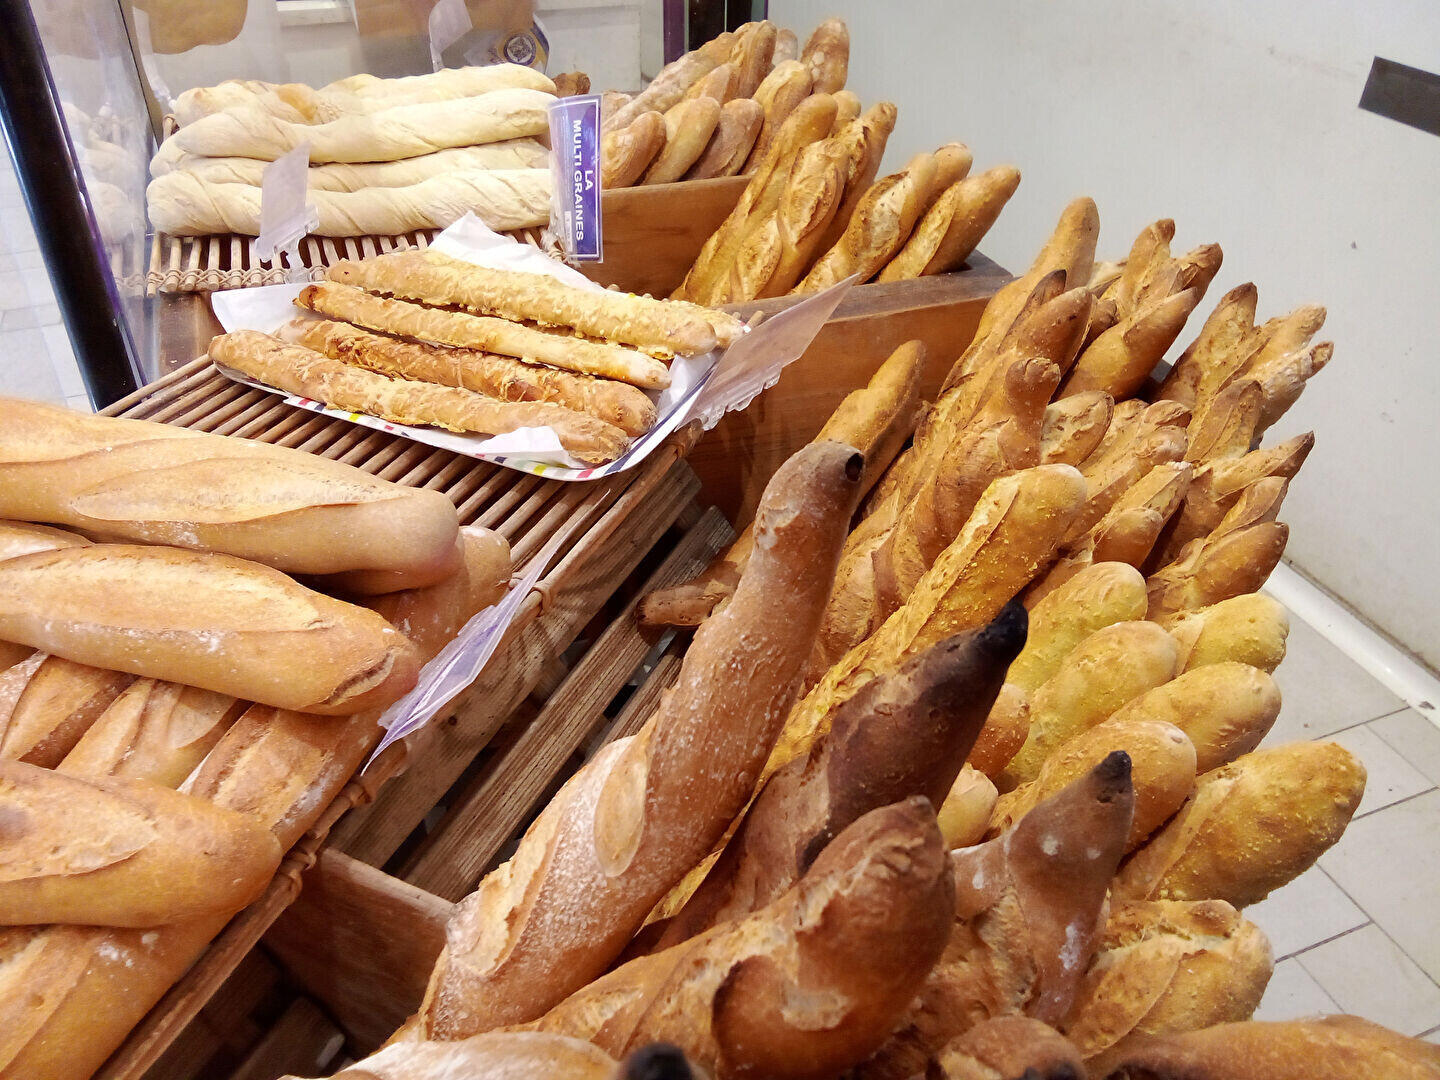 Fonds de boulangerie à vendre à Villenave d'Ornon